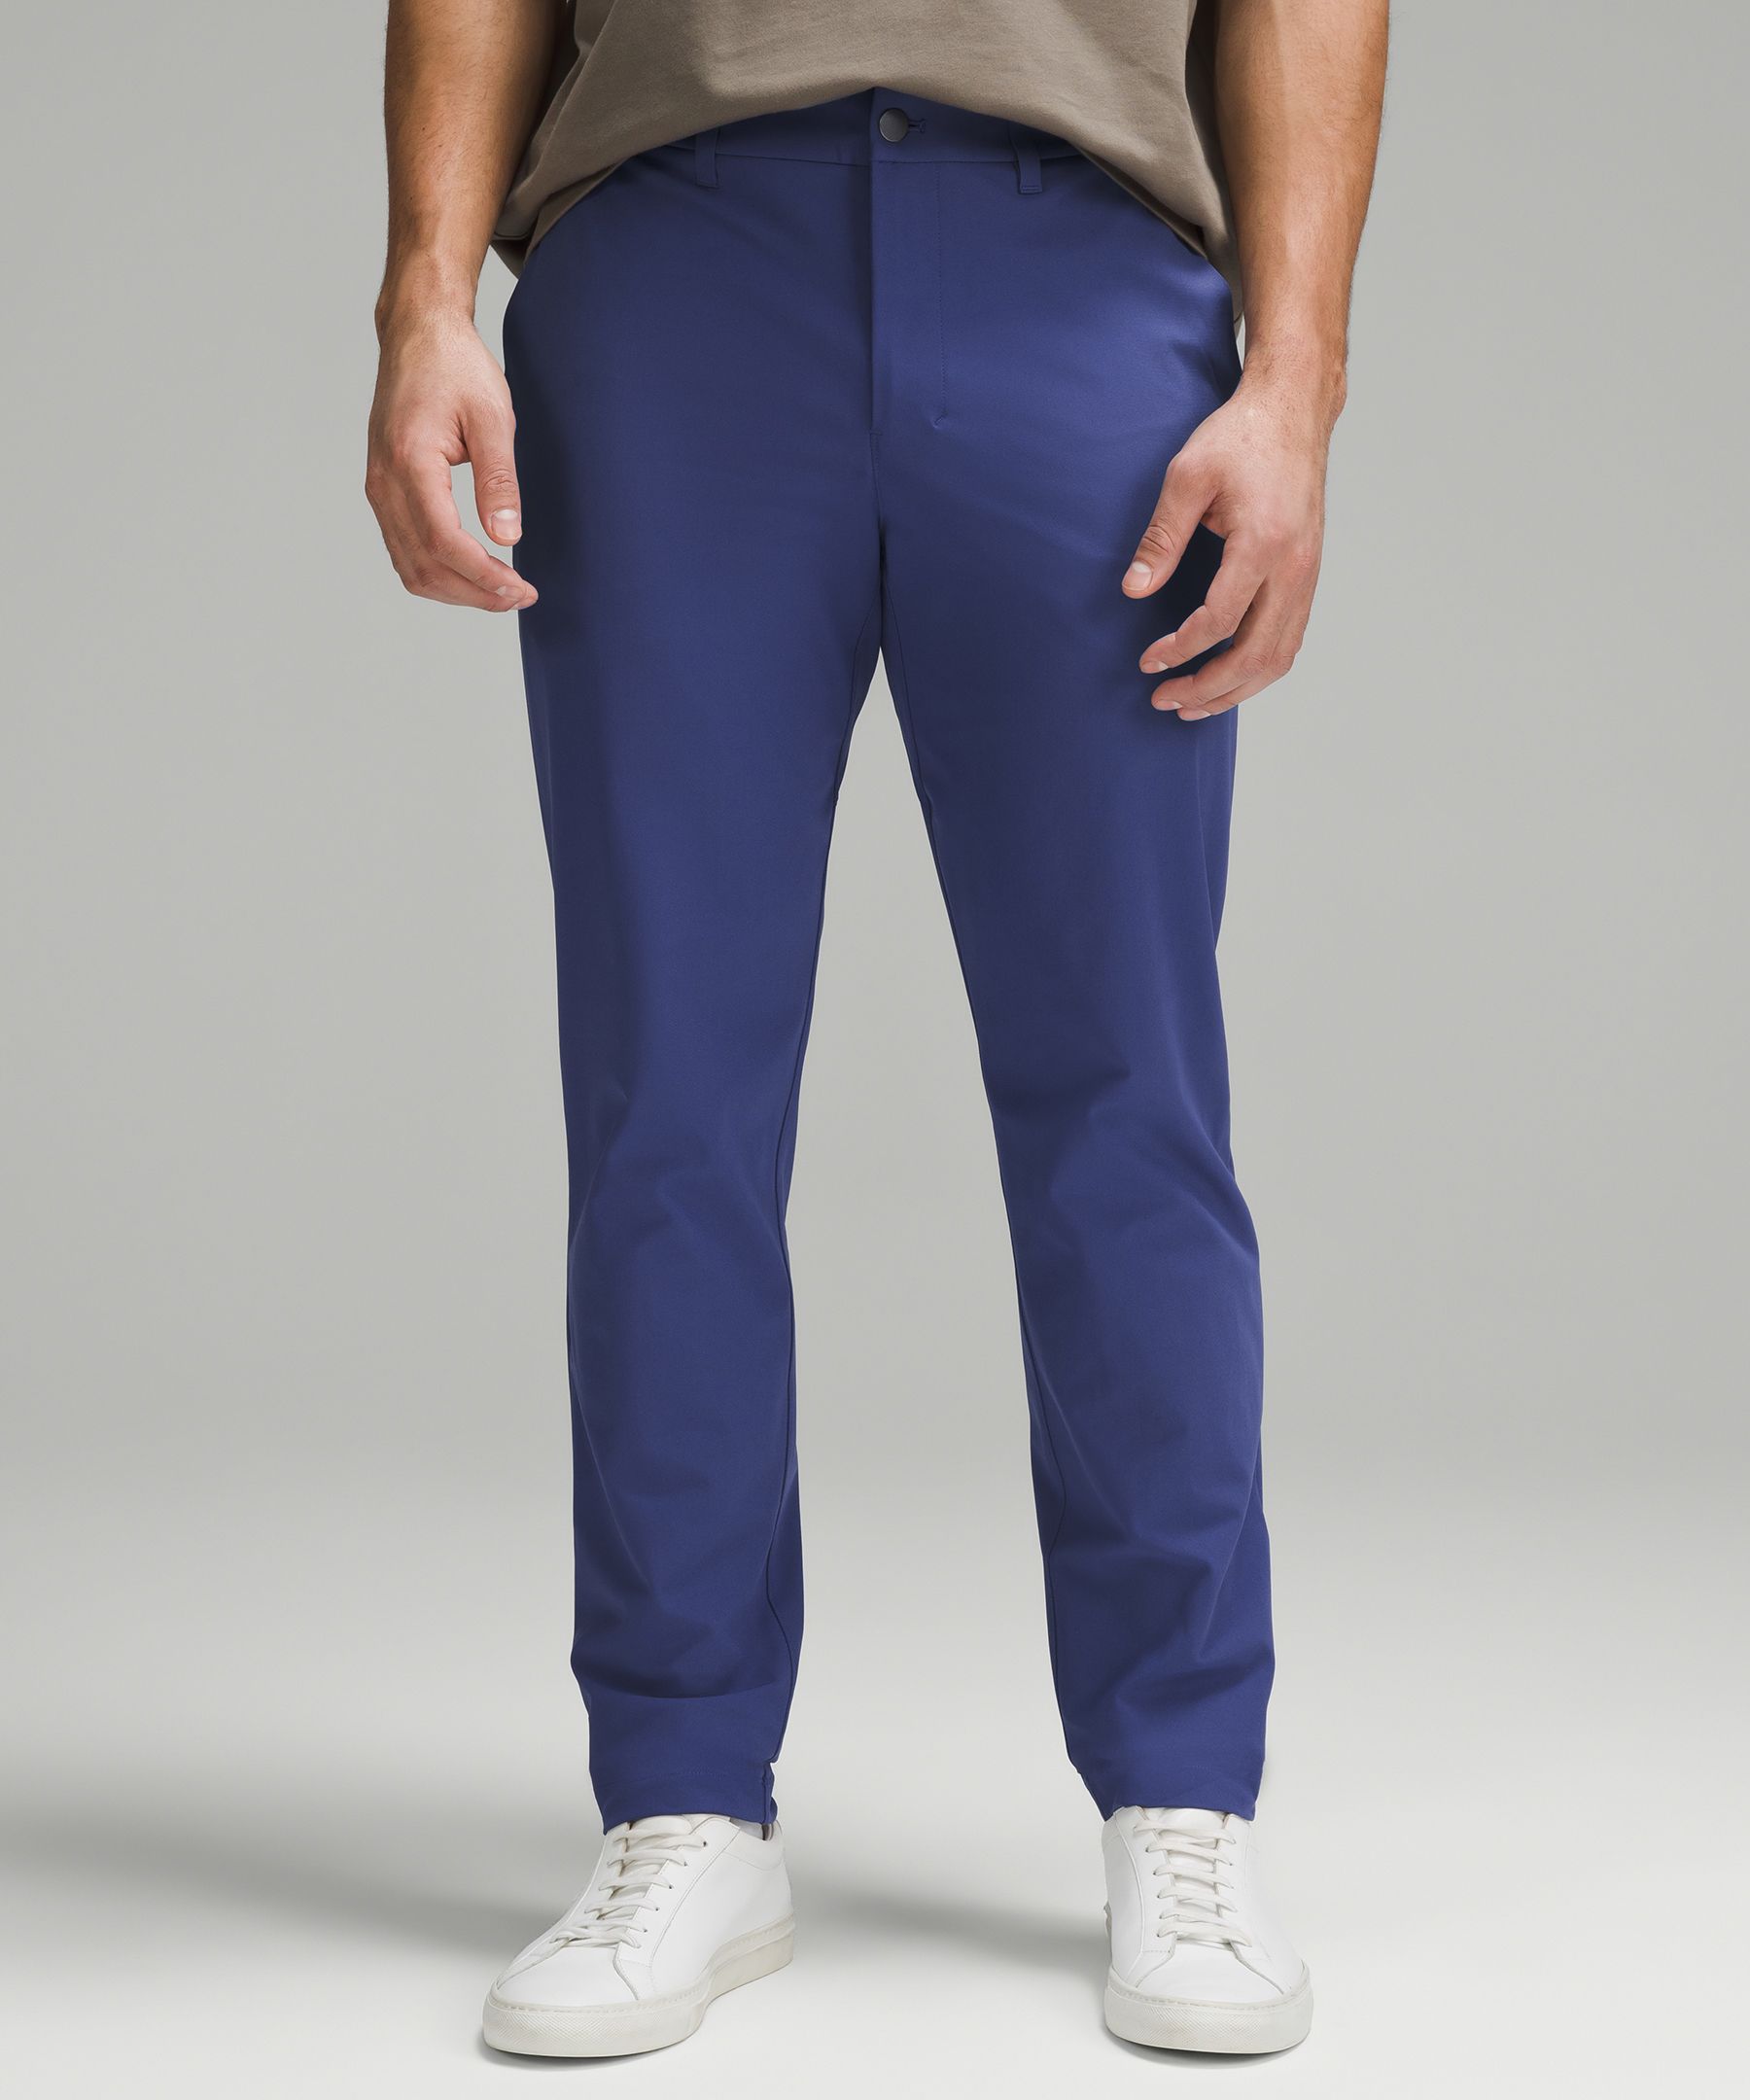 Lululemon Men Size 28 Commission Pant Slim 32”L Blue TRNV Warpstreme Causal  